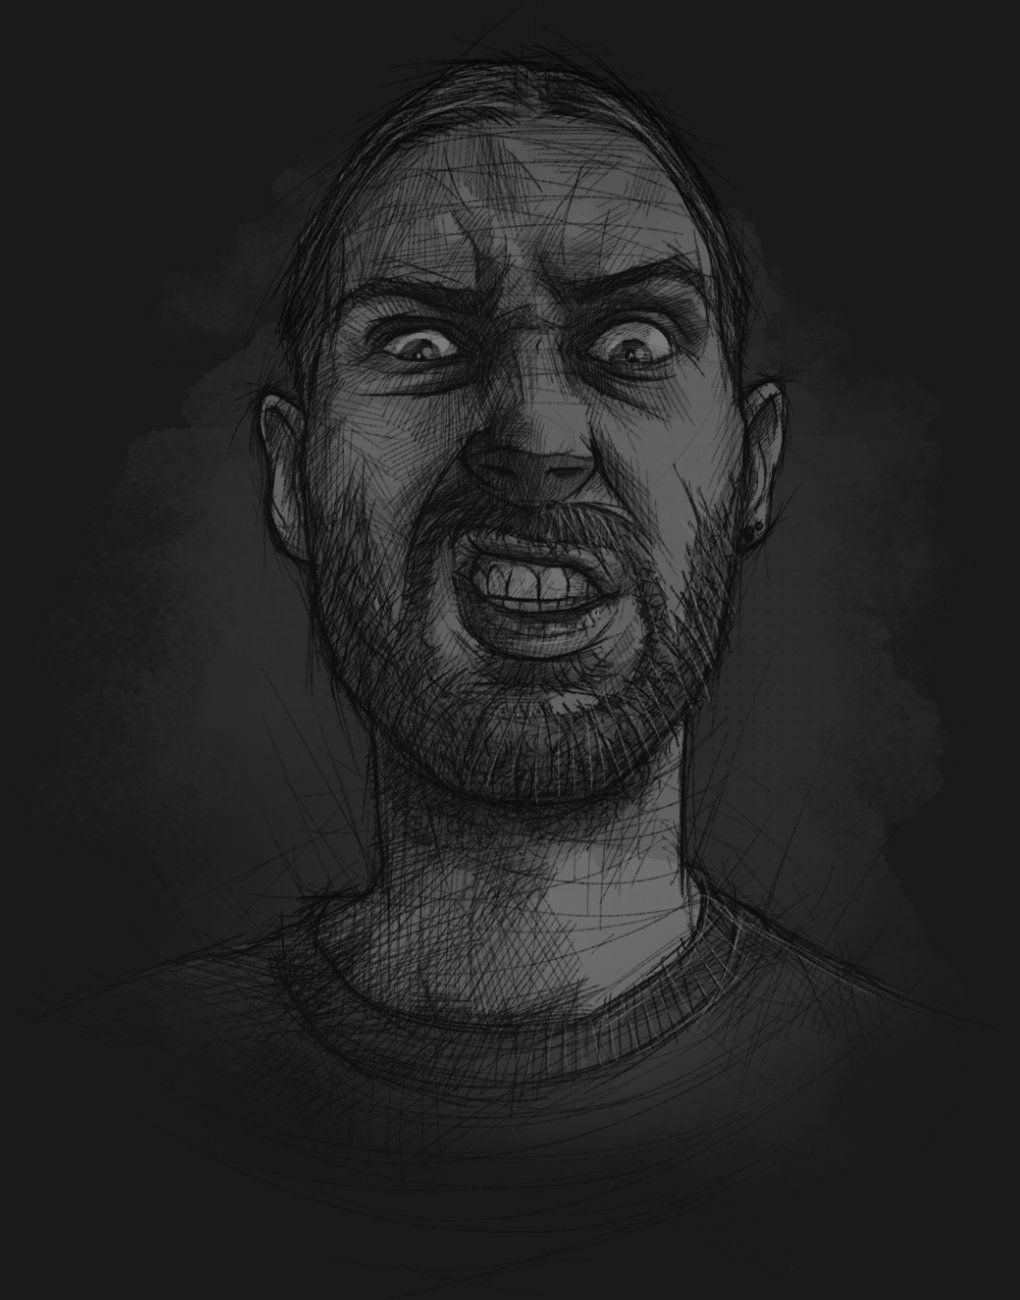 Ein skizzenhaft illustriertes Selbstportrait, das den Illustrator mit Grimasse mit einem angriffslustigen Gesicht zeigt